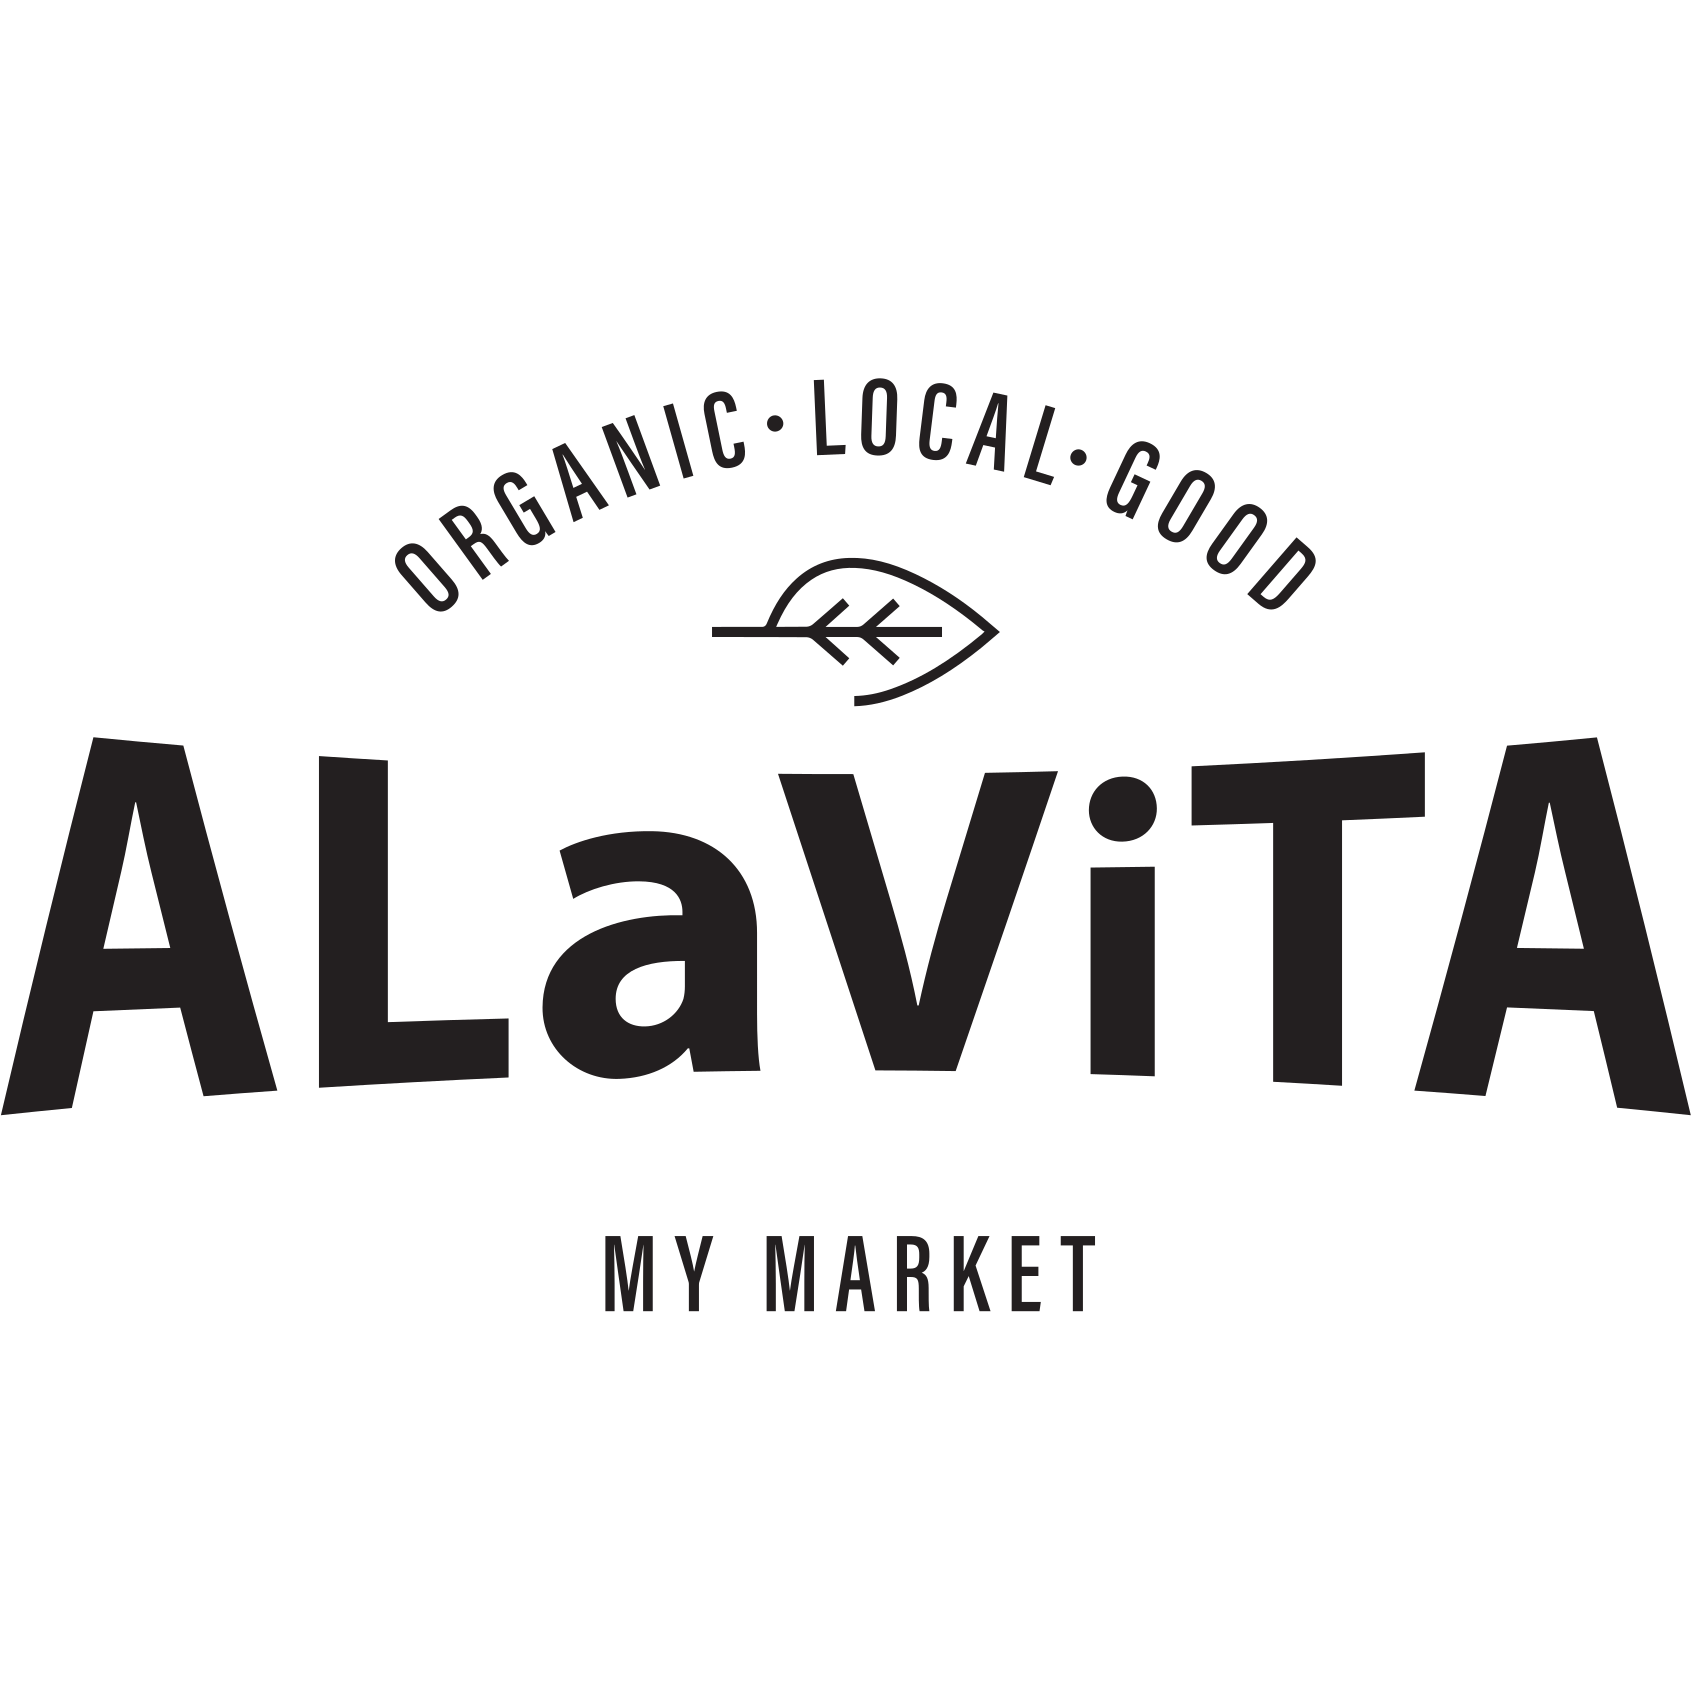 Alavita